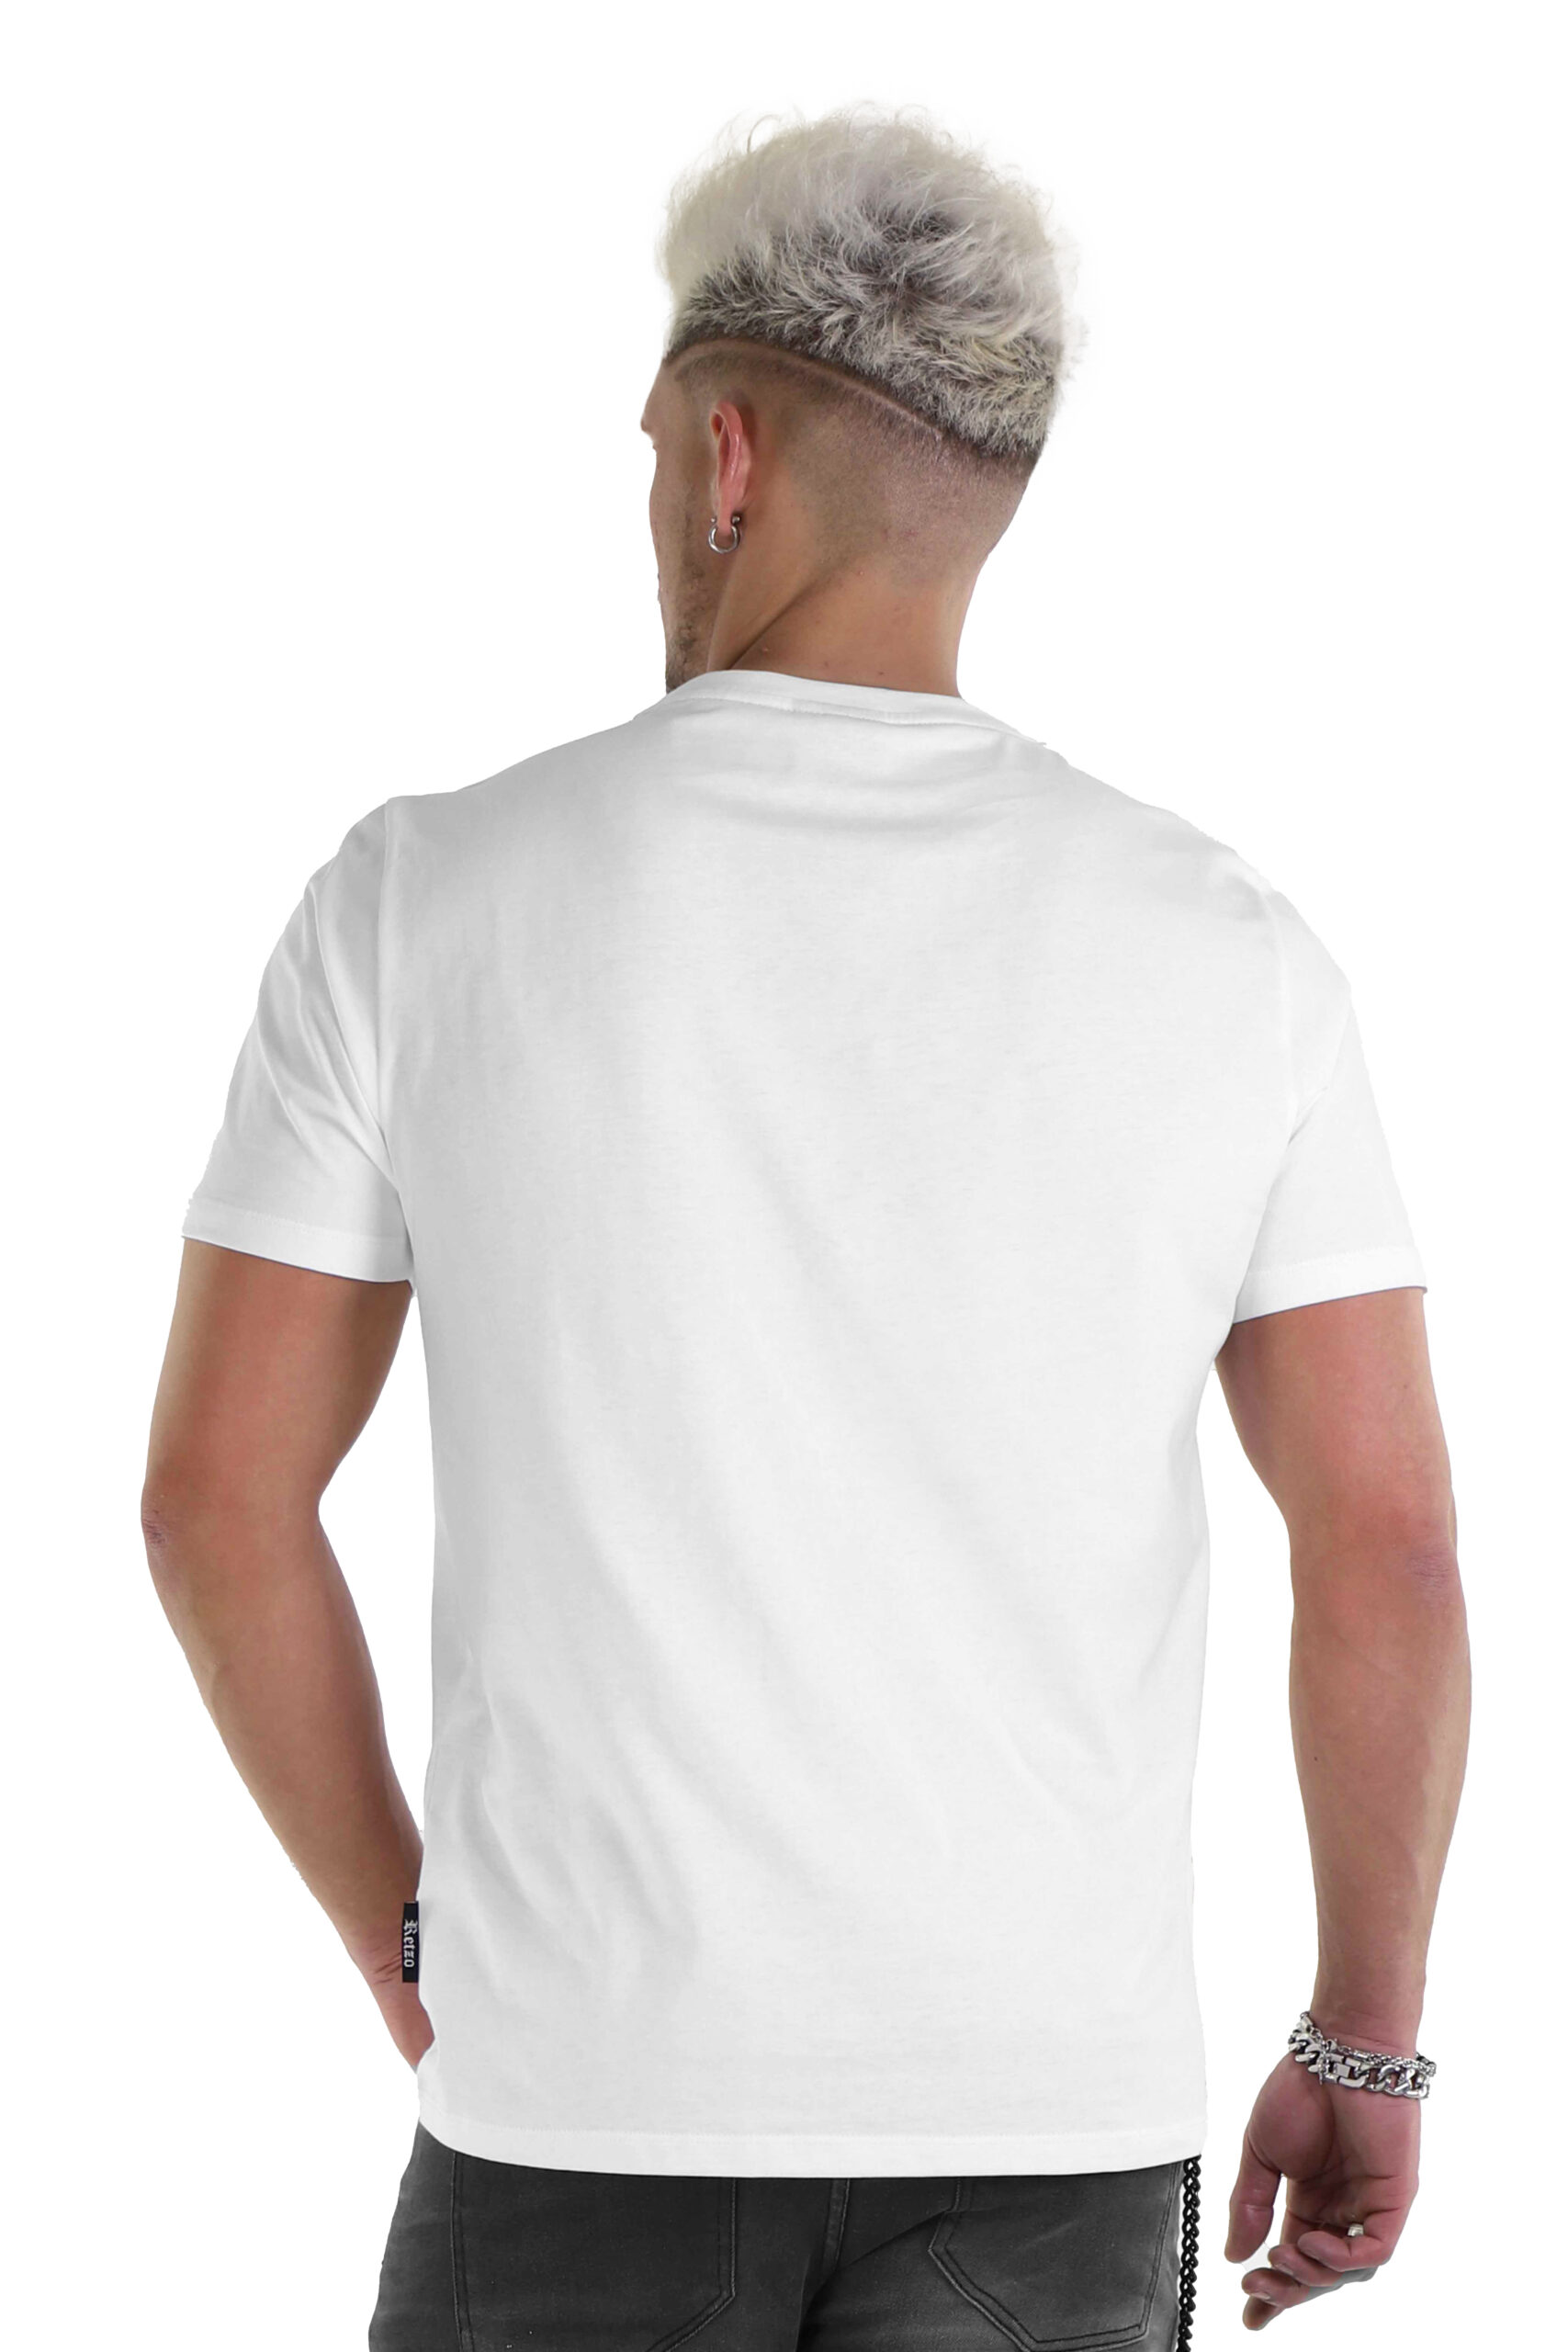 T-Shirt Branca Com Brilhantes - Retzo